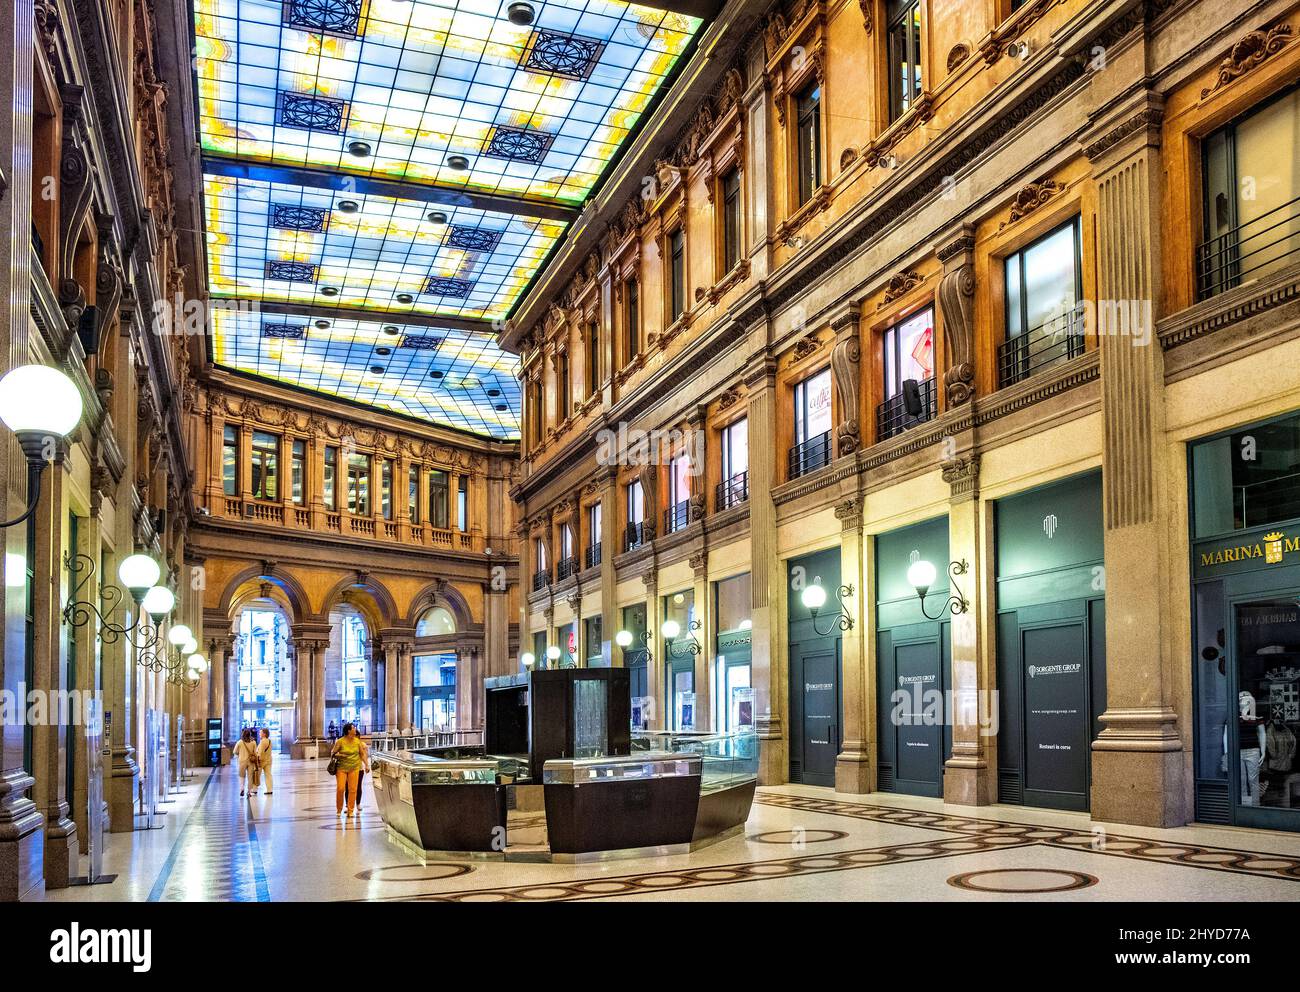 Rom, Italien - 25. Mai 2018: Innenhalle der Galleria Alberto Sordi Shopping Arcade, bekannt als Galleria Colonna, am Piazza Colonna Platz Stockfoto